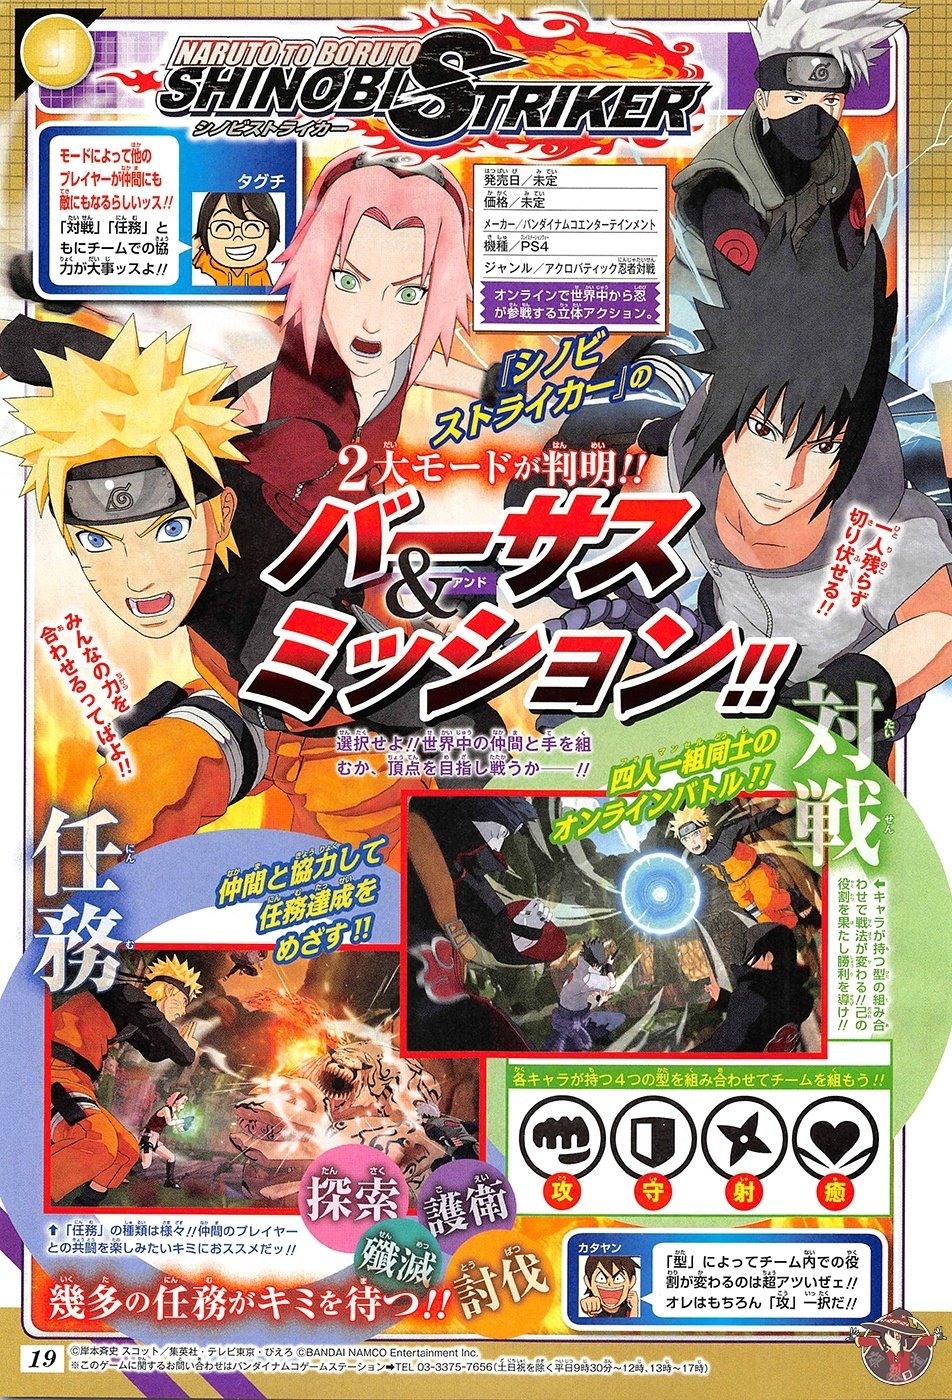 Naruto-to-Boruto-Shinobi-Striker_02-06-2017_Jump-scan